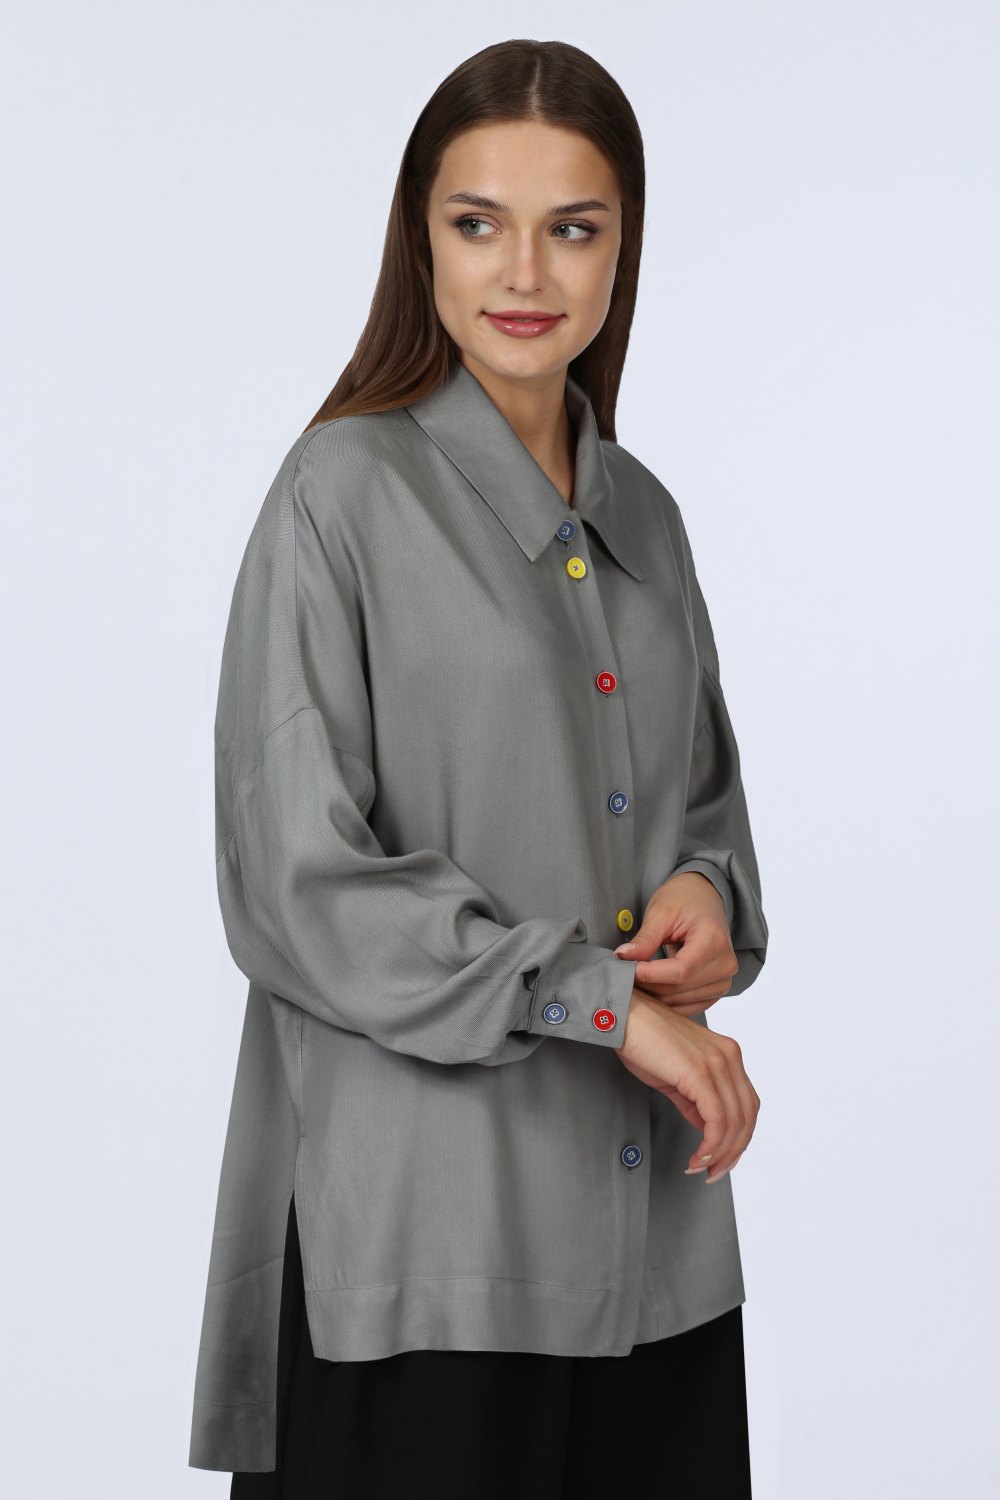 Блузка женская Классика С манжетами модель 153/1 цвет: серый